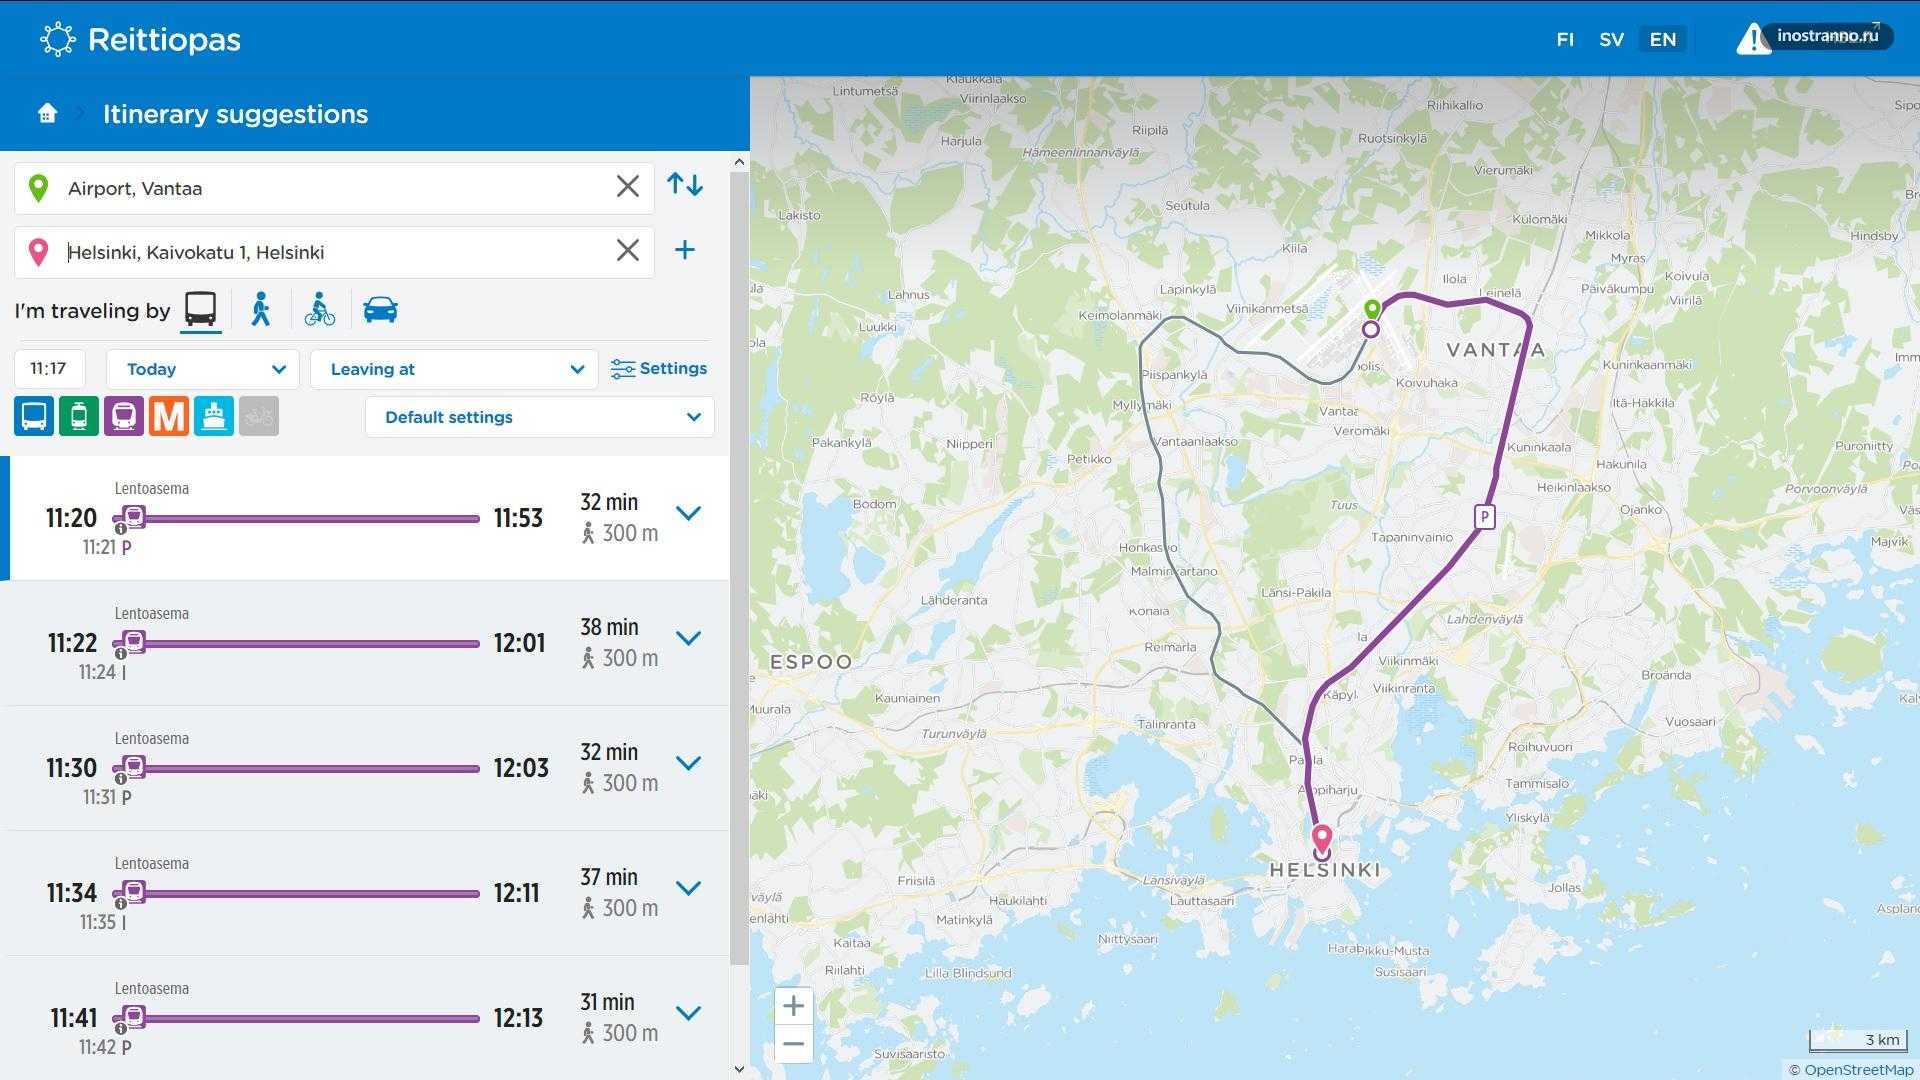 Из санкт-петербурга в хельсинки - как добраться, план поездки и маршрут прогулки на 1 день по достопримечательностям